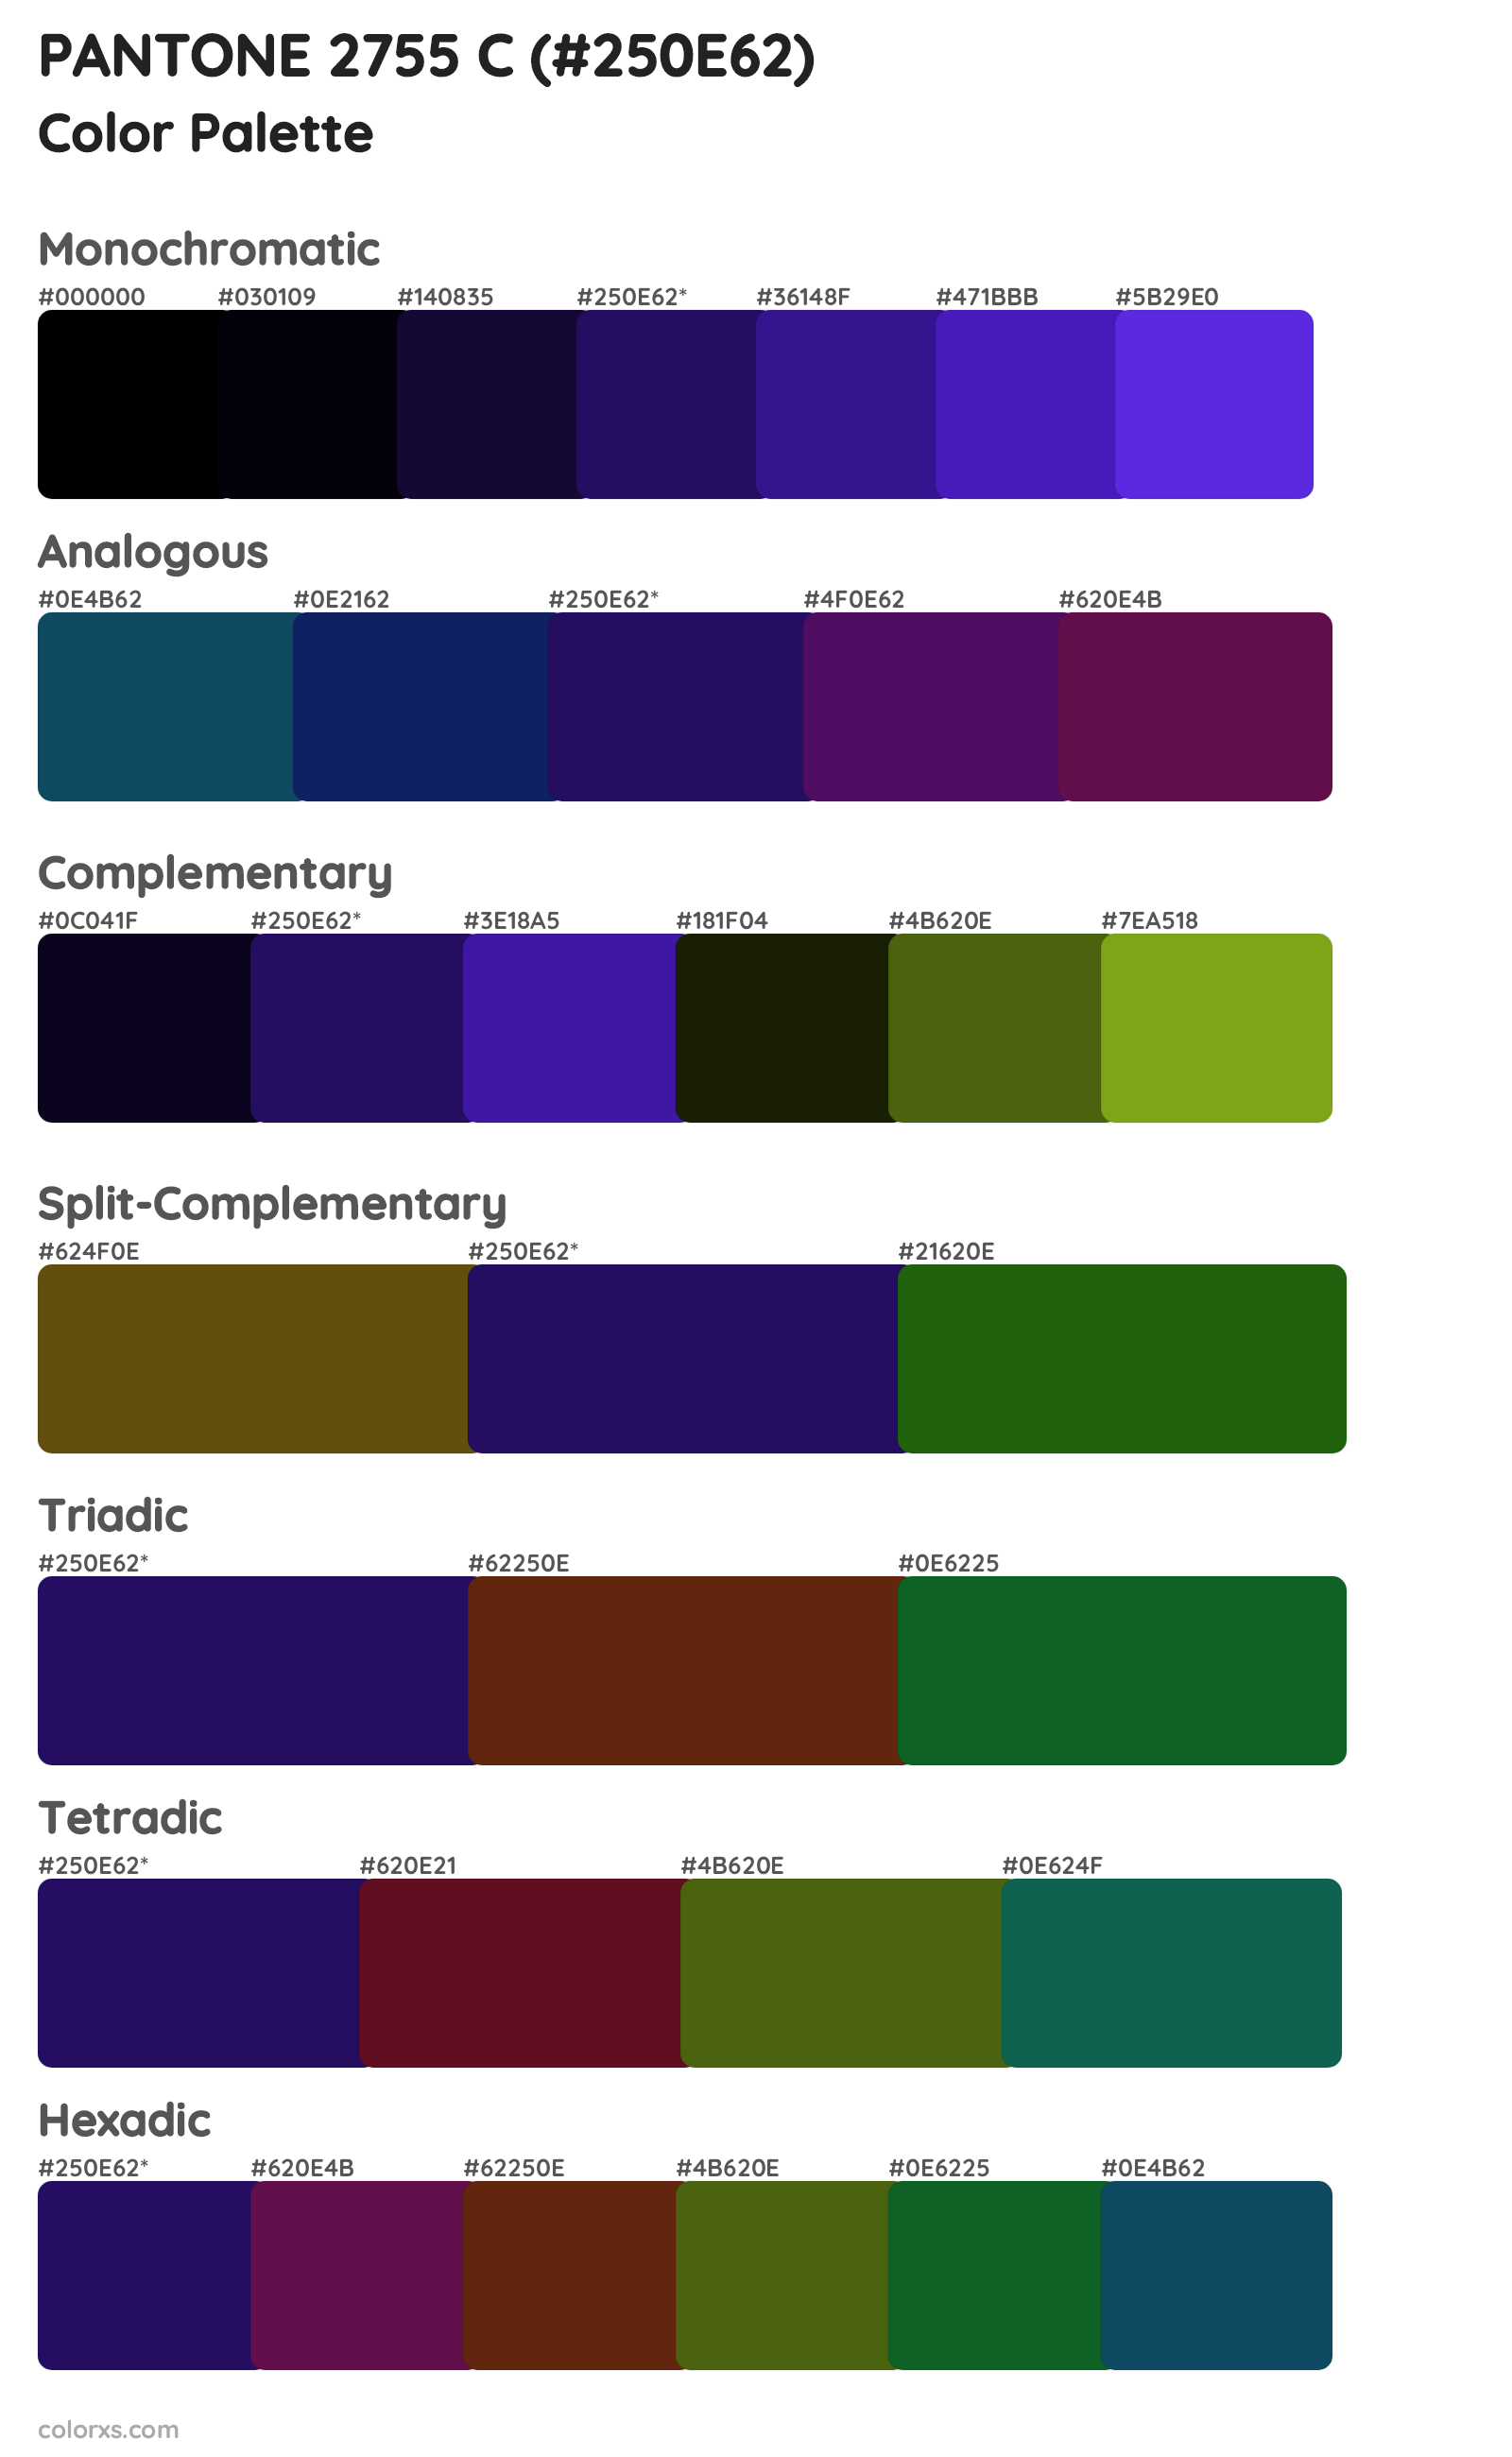 PANTONE 2755 C Color Scheme Palettes